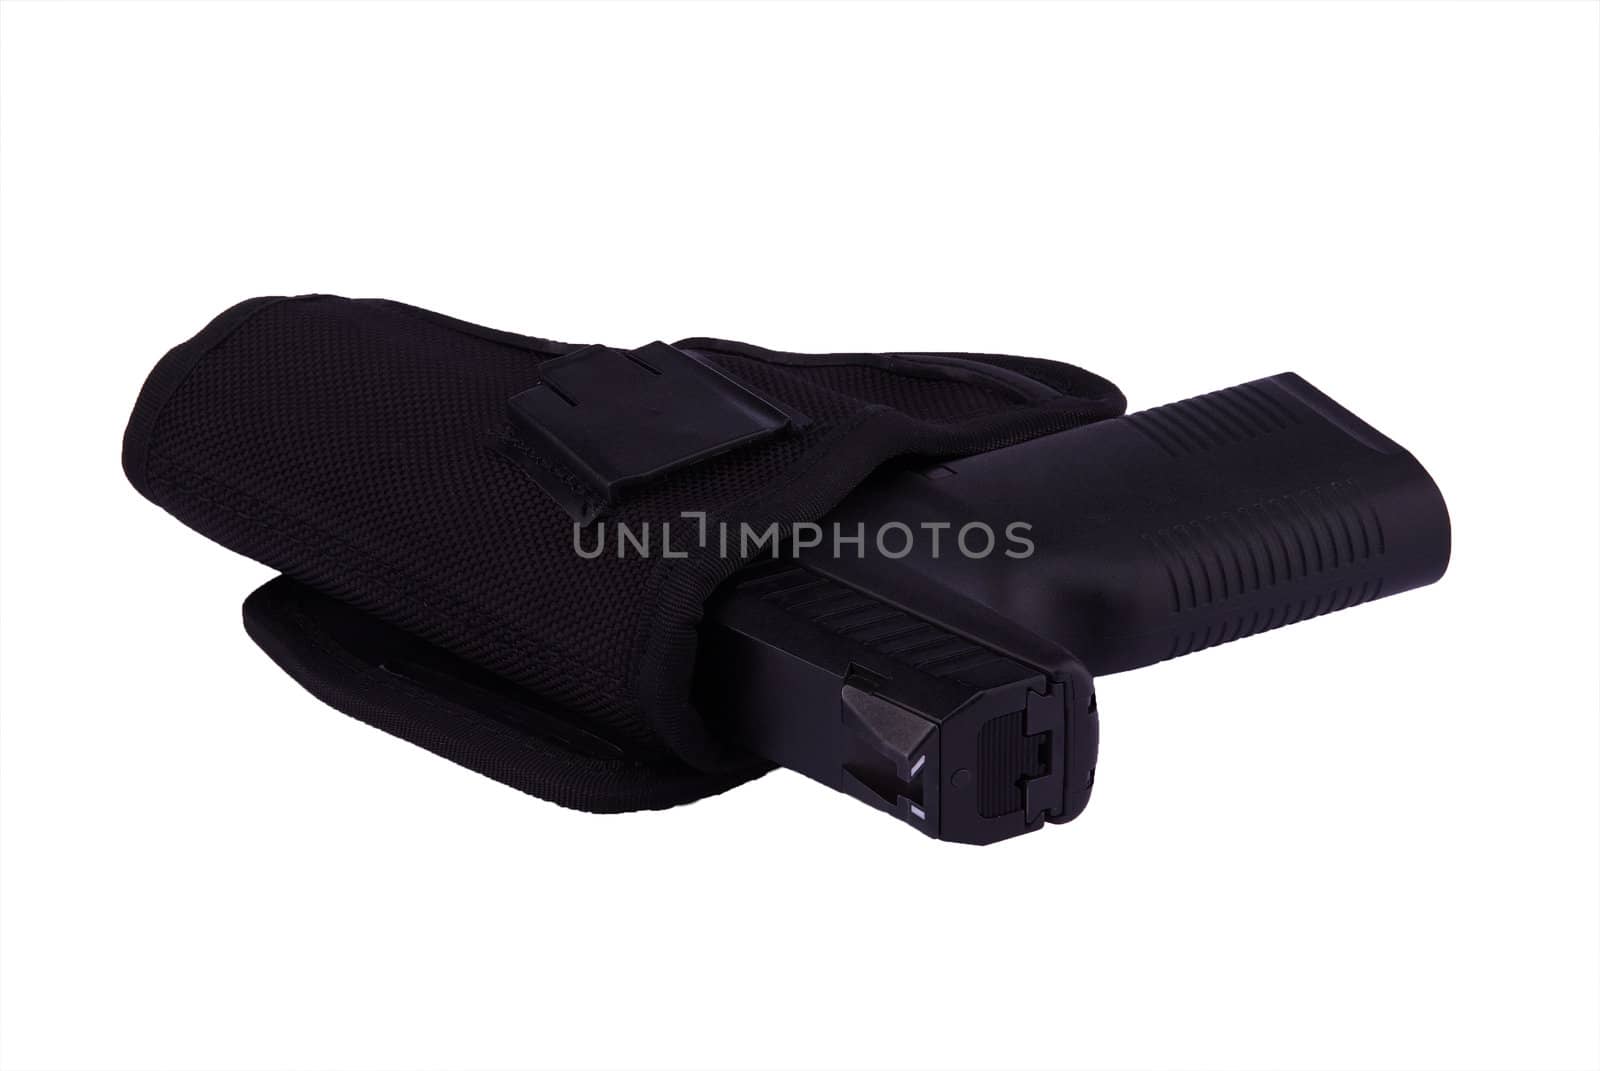 Black 9 mm pistol in holster